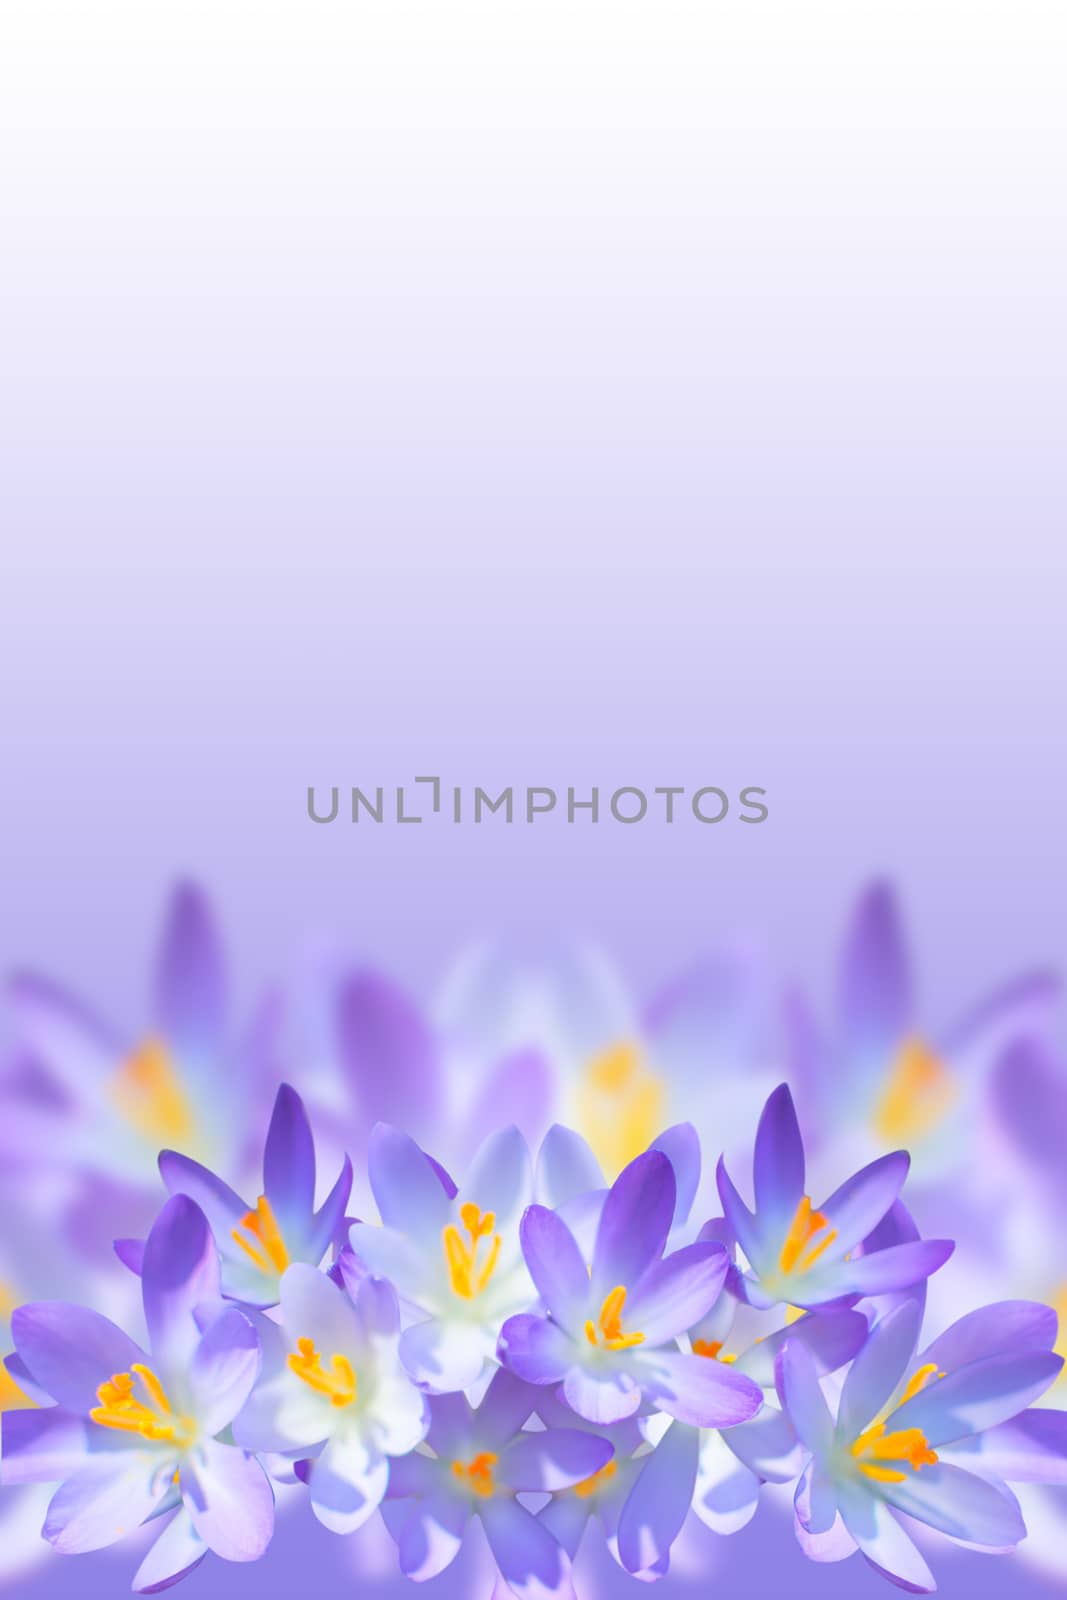 Violet spring crocus flowers on blurred background by servickuz